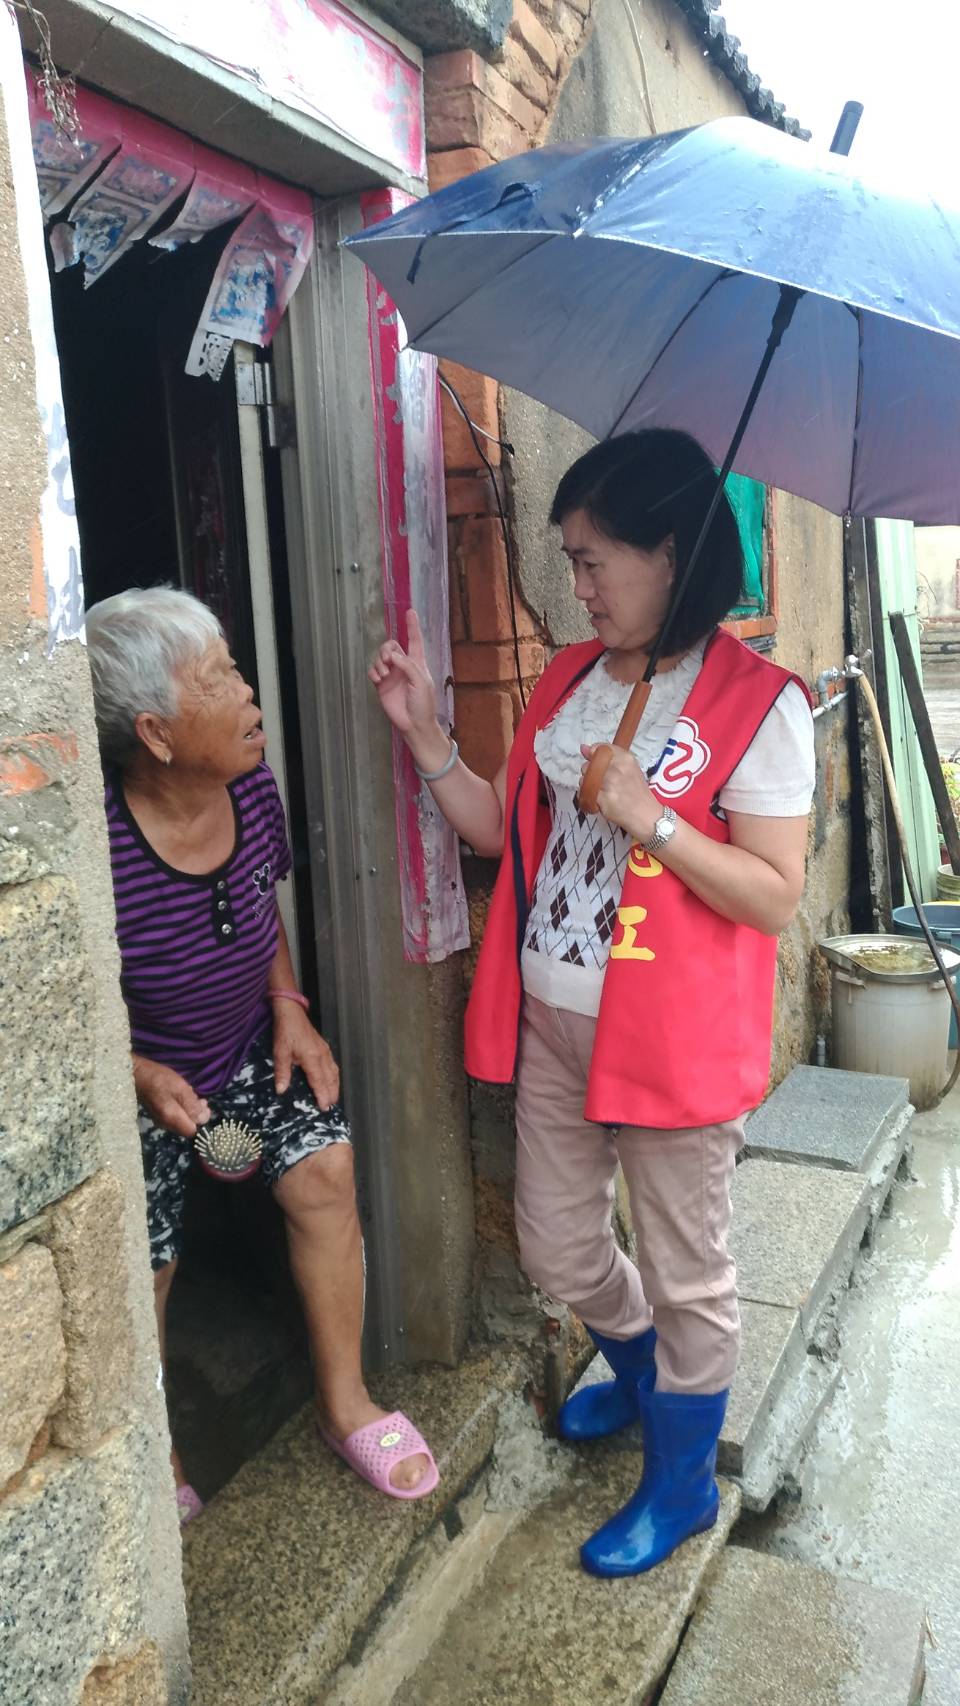 尼莎颱風來襲服務組長帶領志工關懷特較需榮民狀況